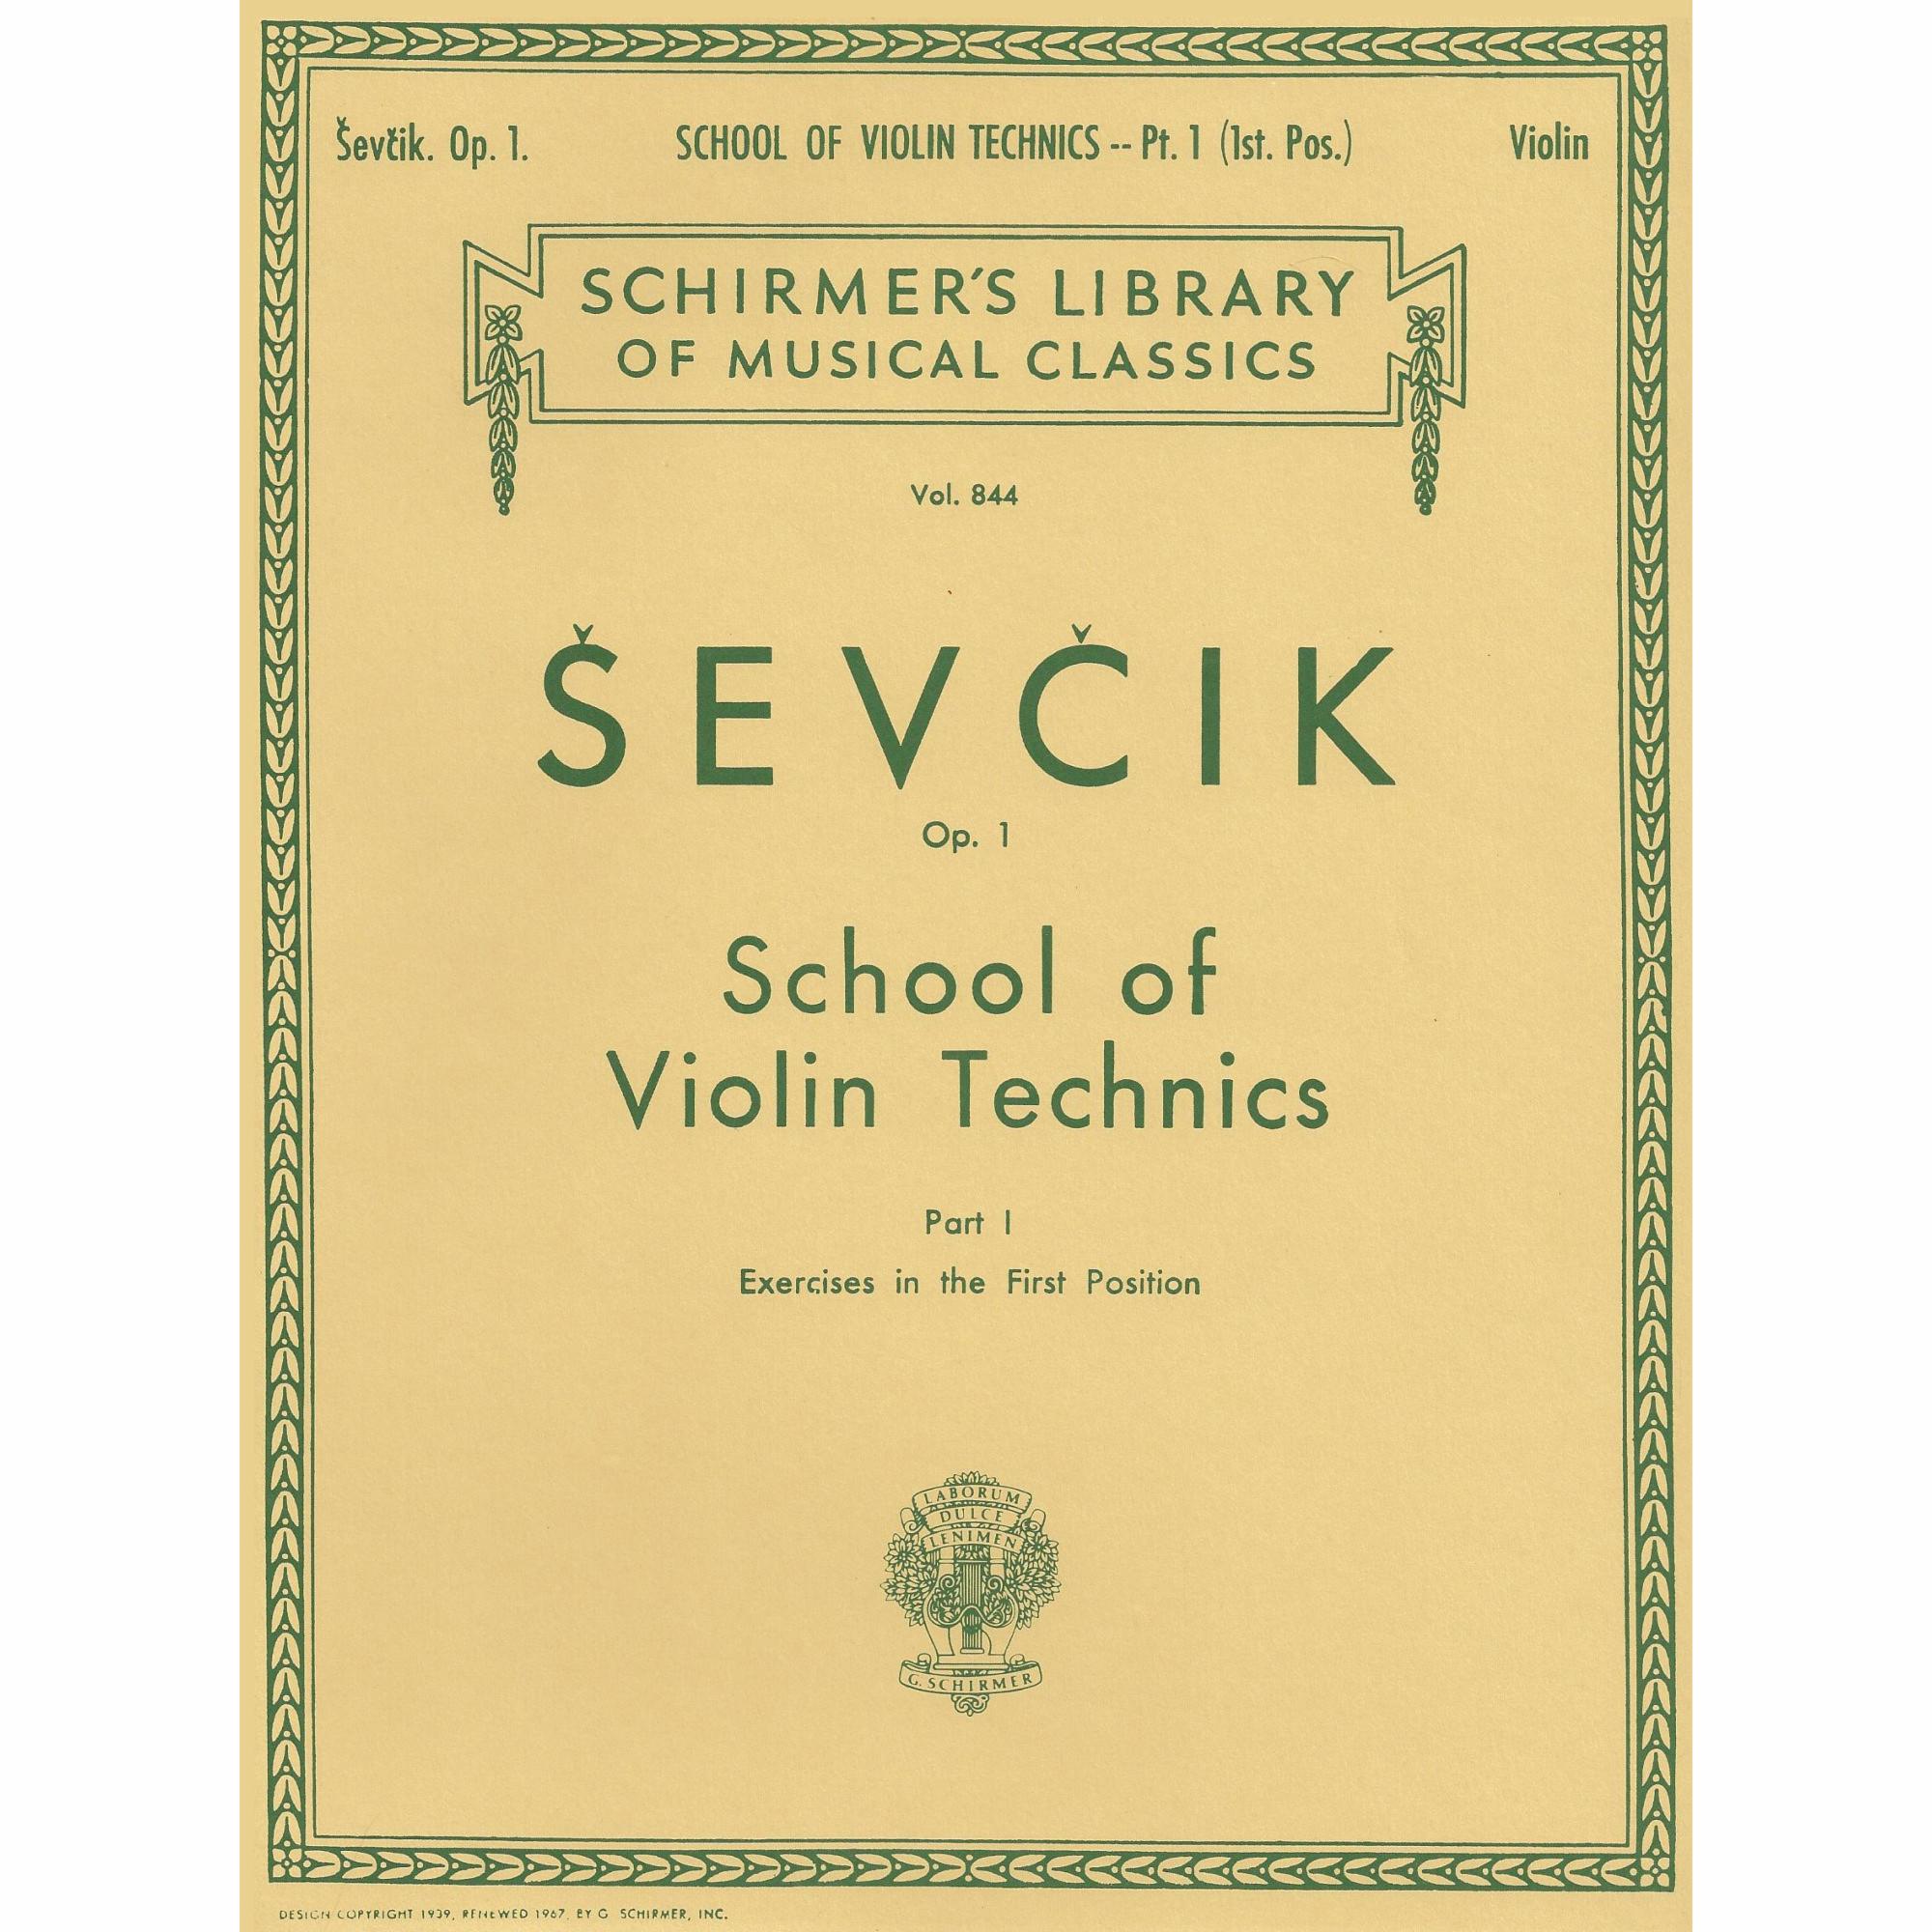 Sevcik -- School of Violin Technique, Op. 1, Parts 1-4